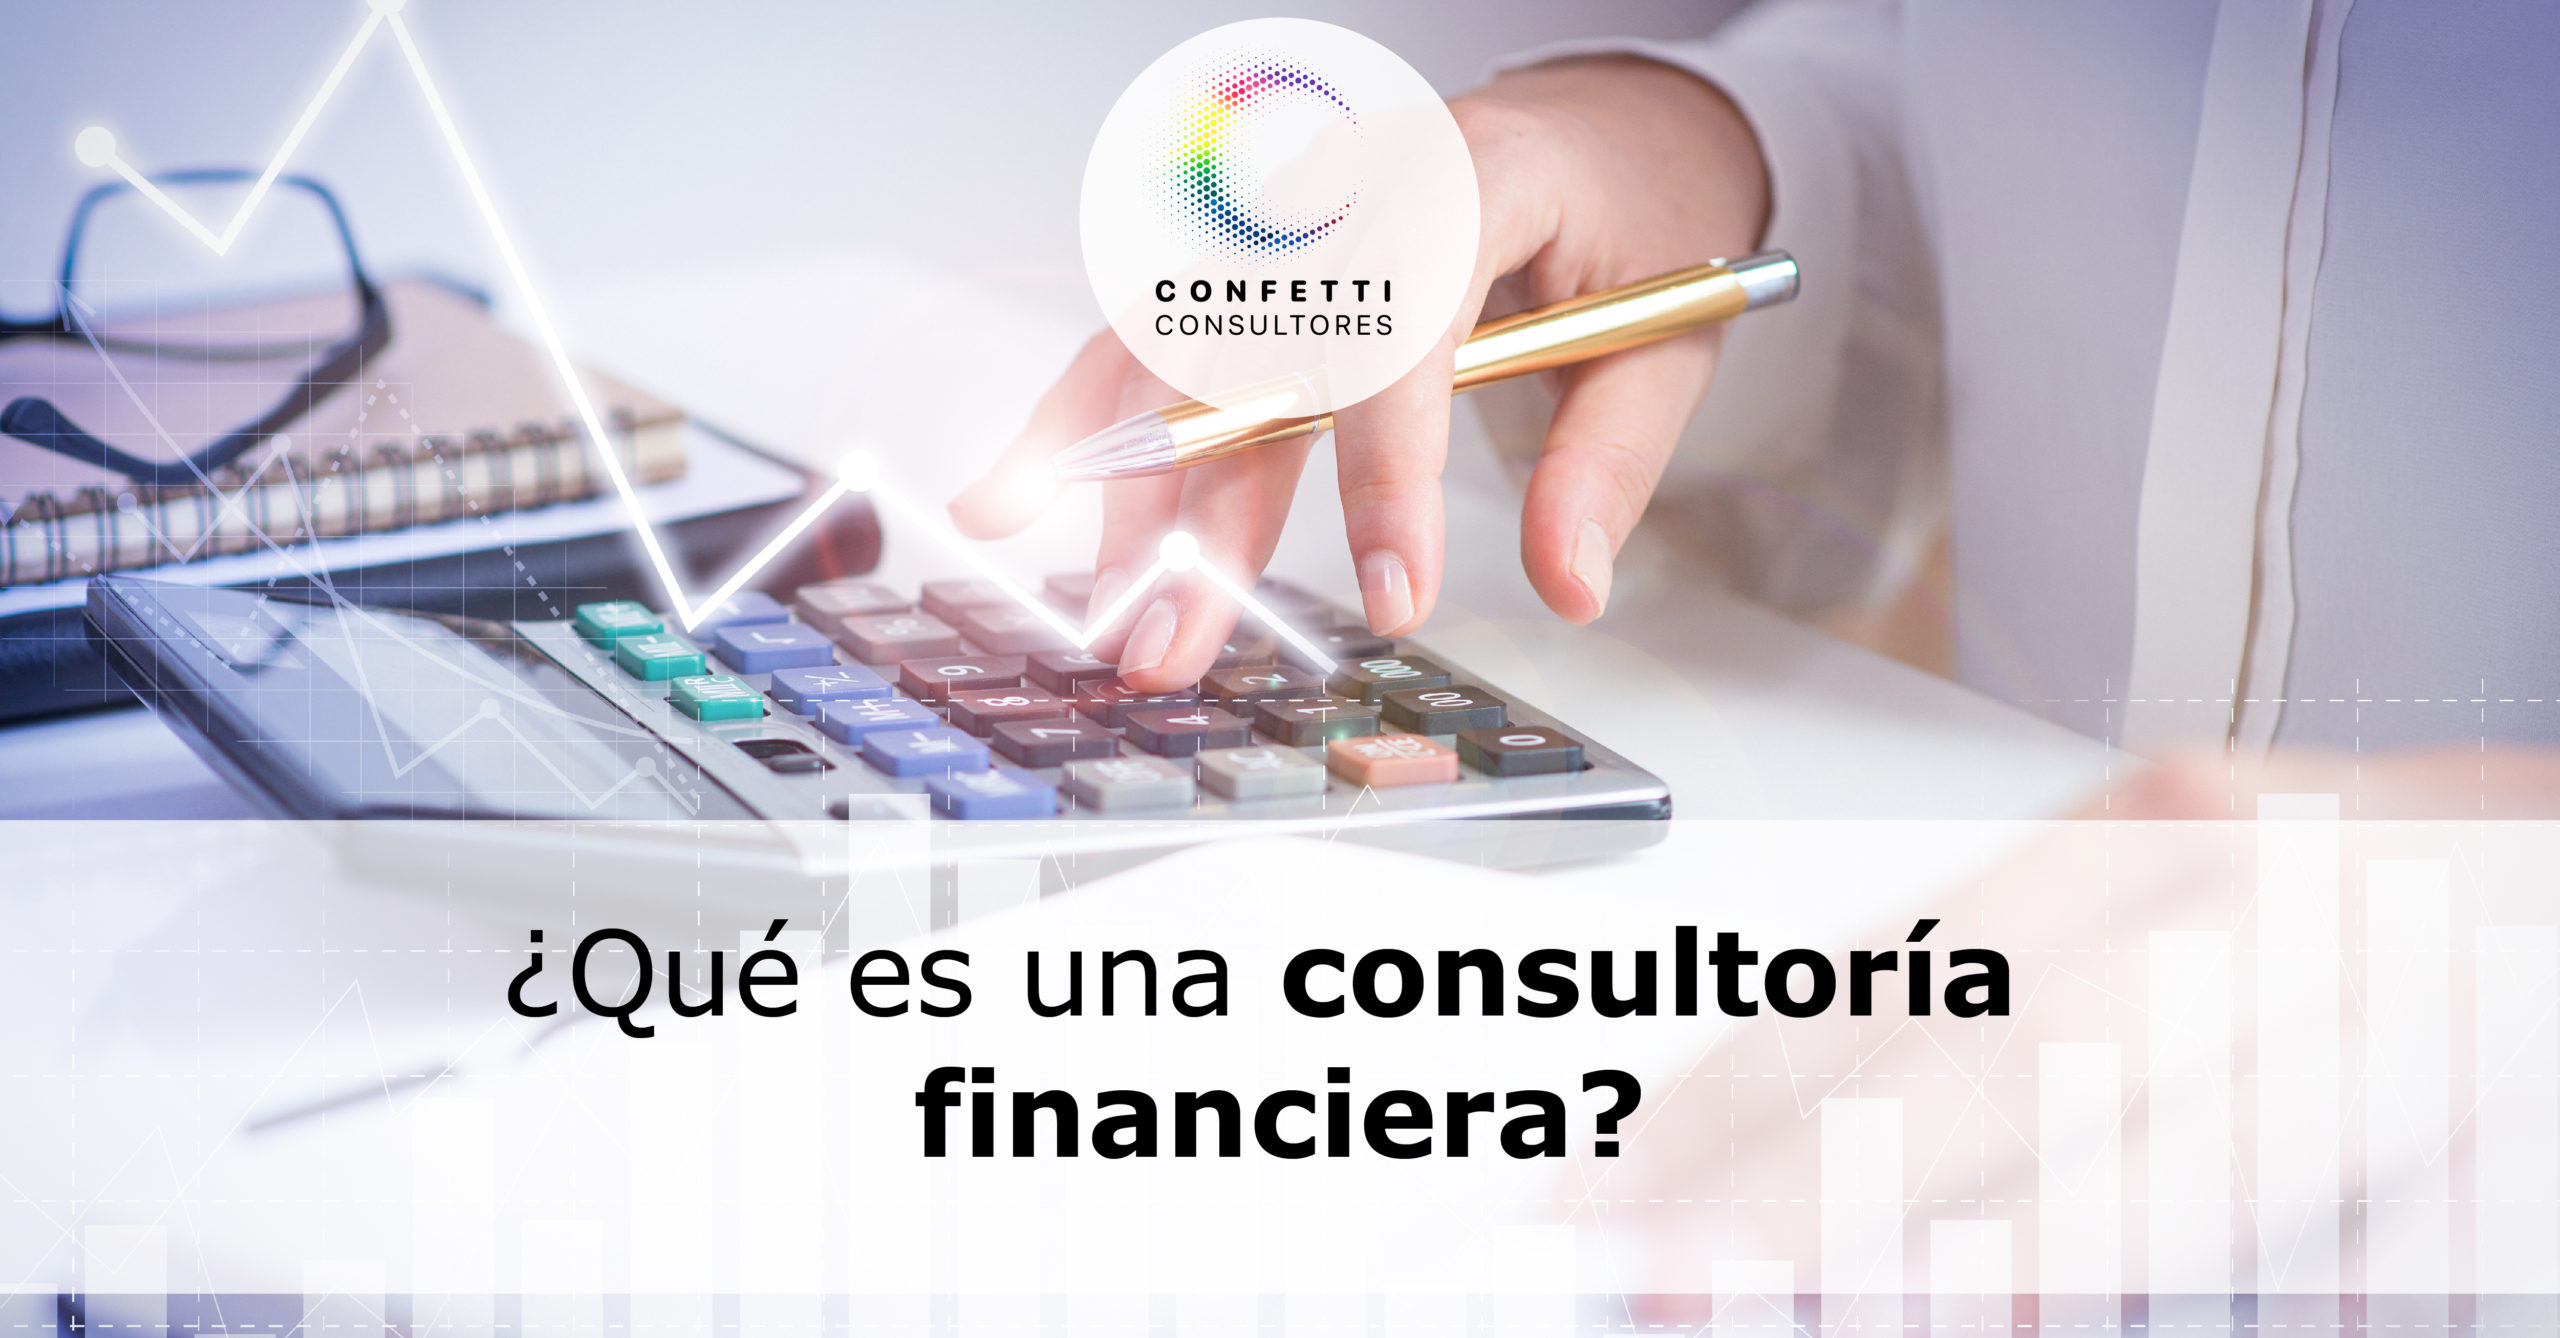 ¿Qué es una consultoría financiera?